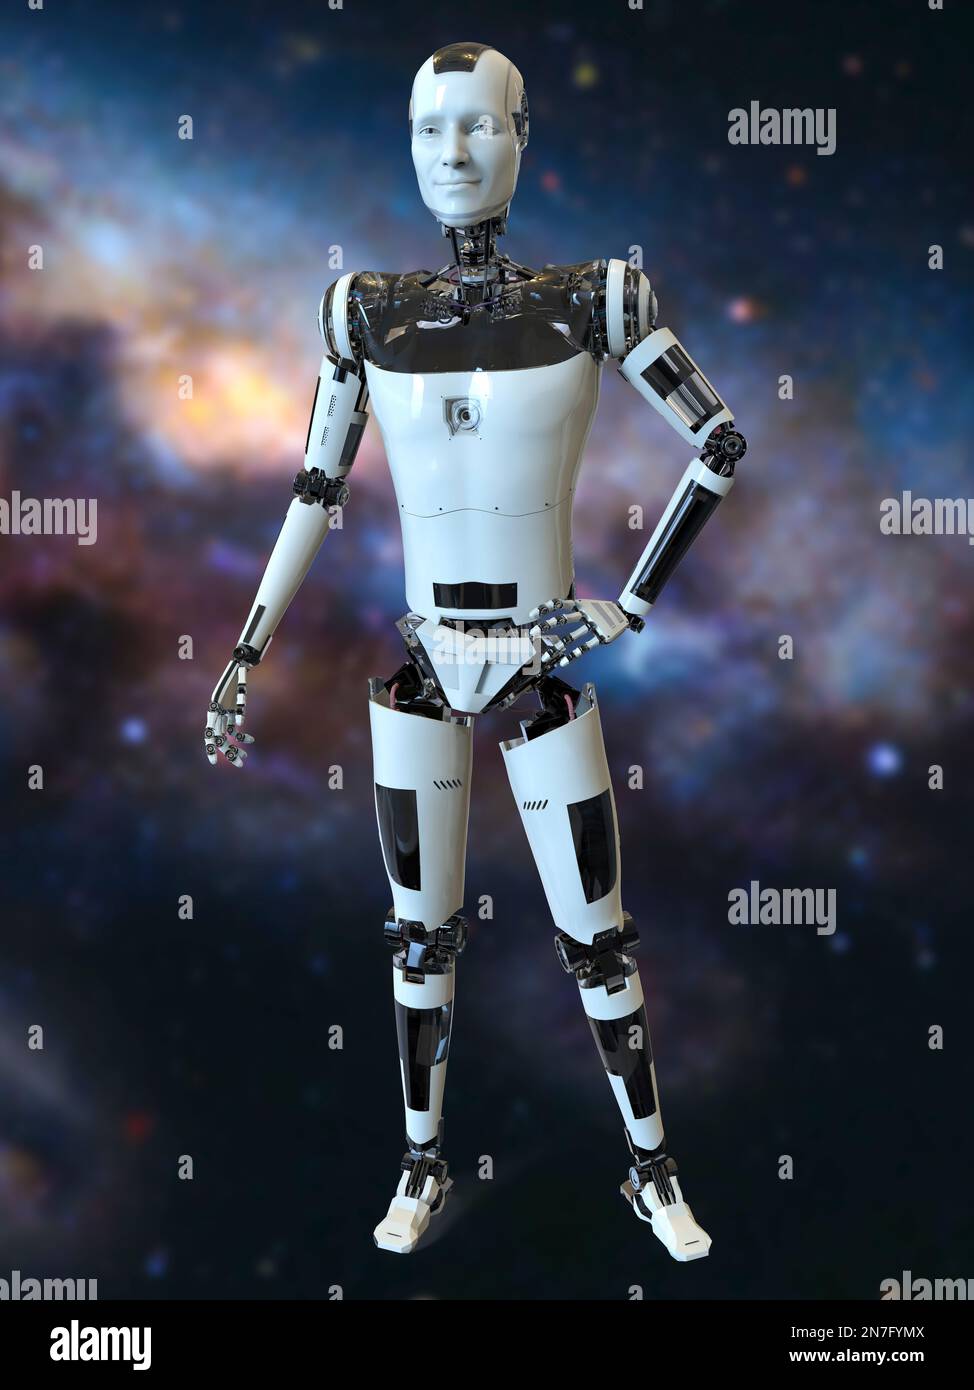 Futuristic humanoid robot, illustration Stock Photo